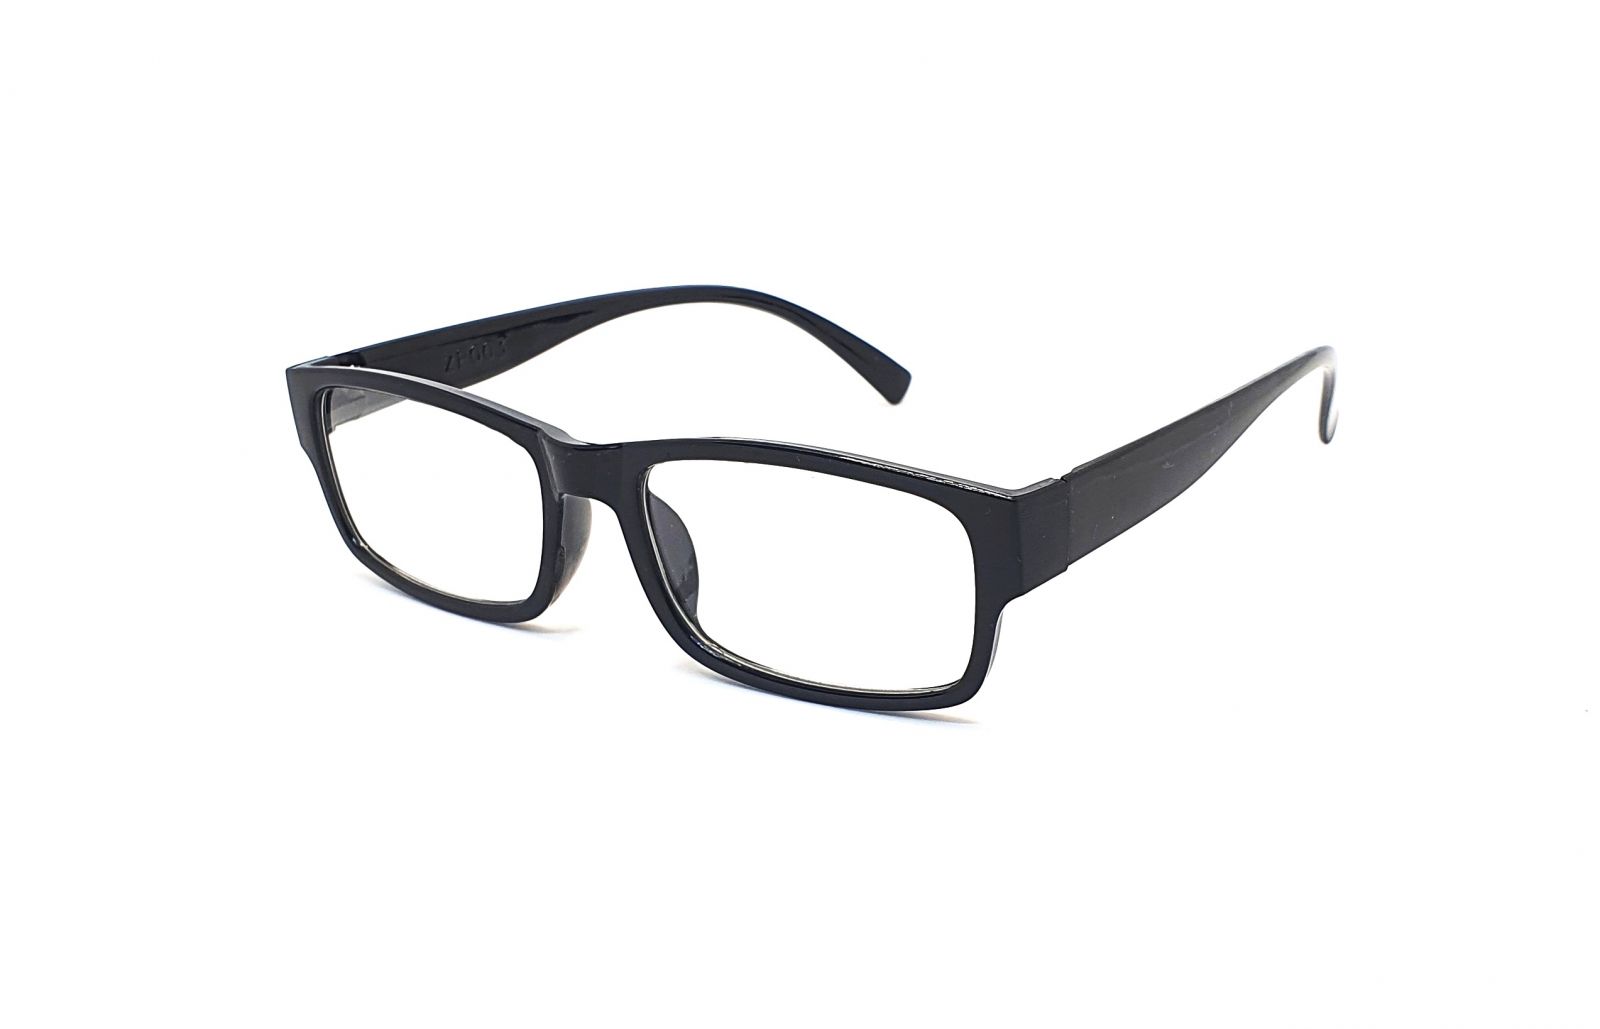 Dioptrické brýle ZP003 +3,00